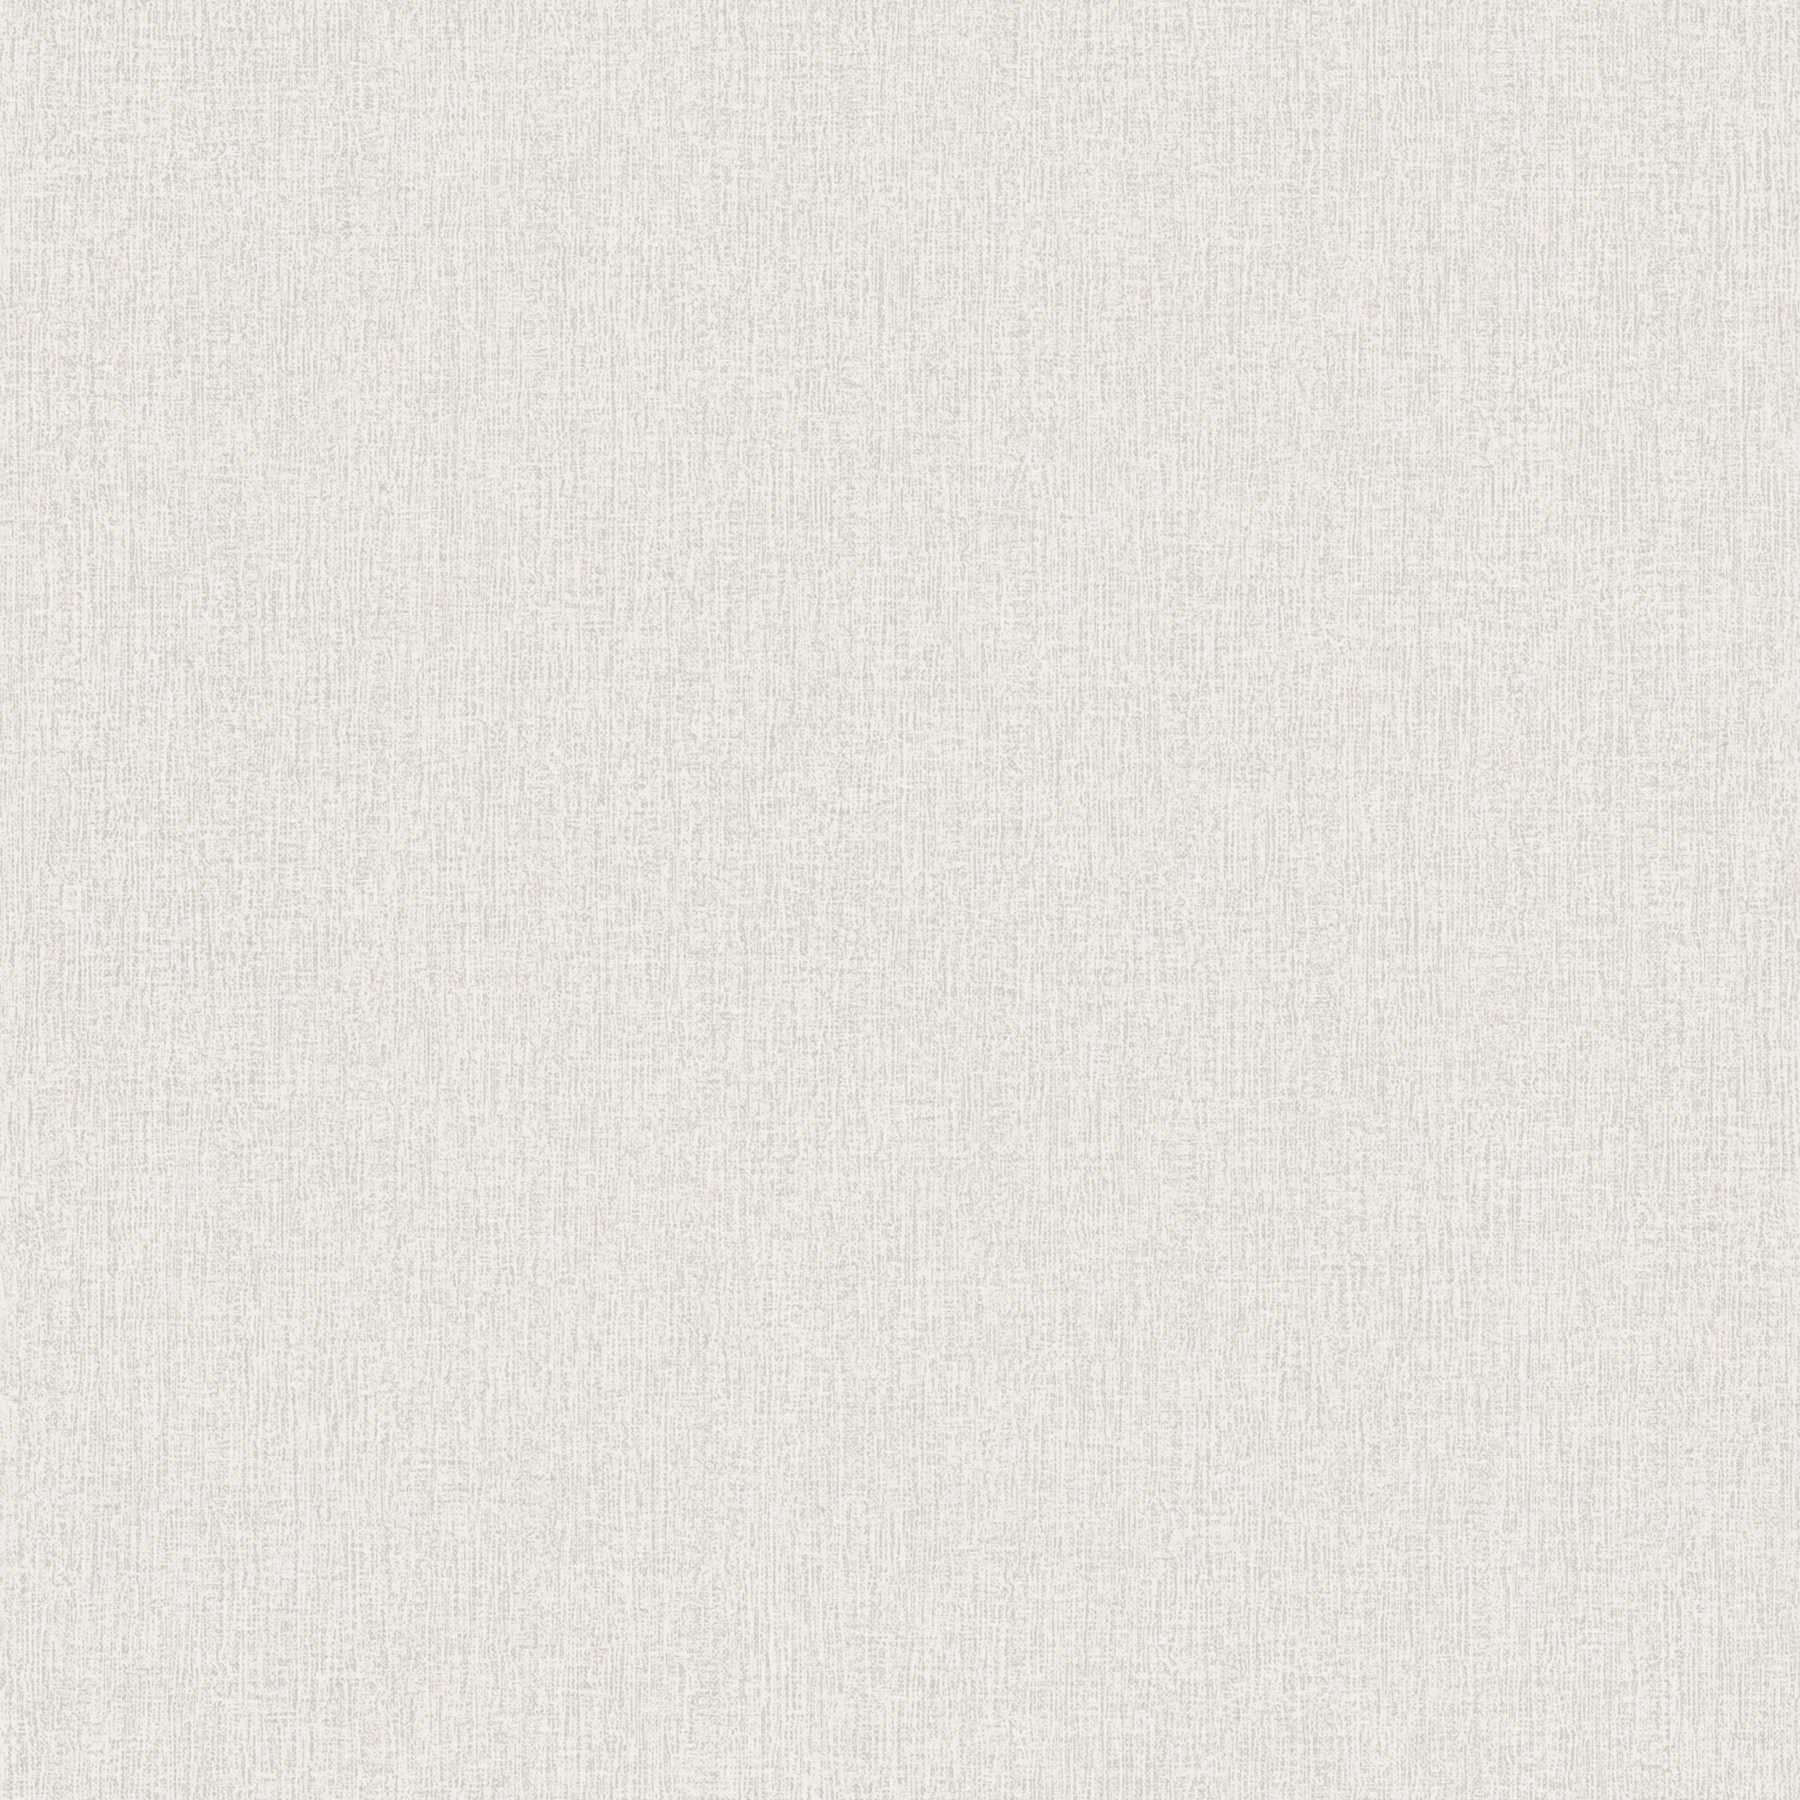 Papier peint uni chiné, avec structure tissée - blanc, gris
